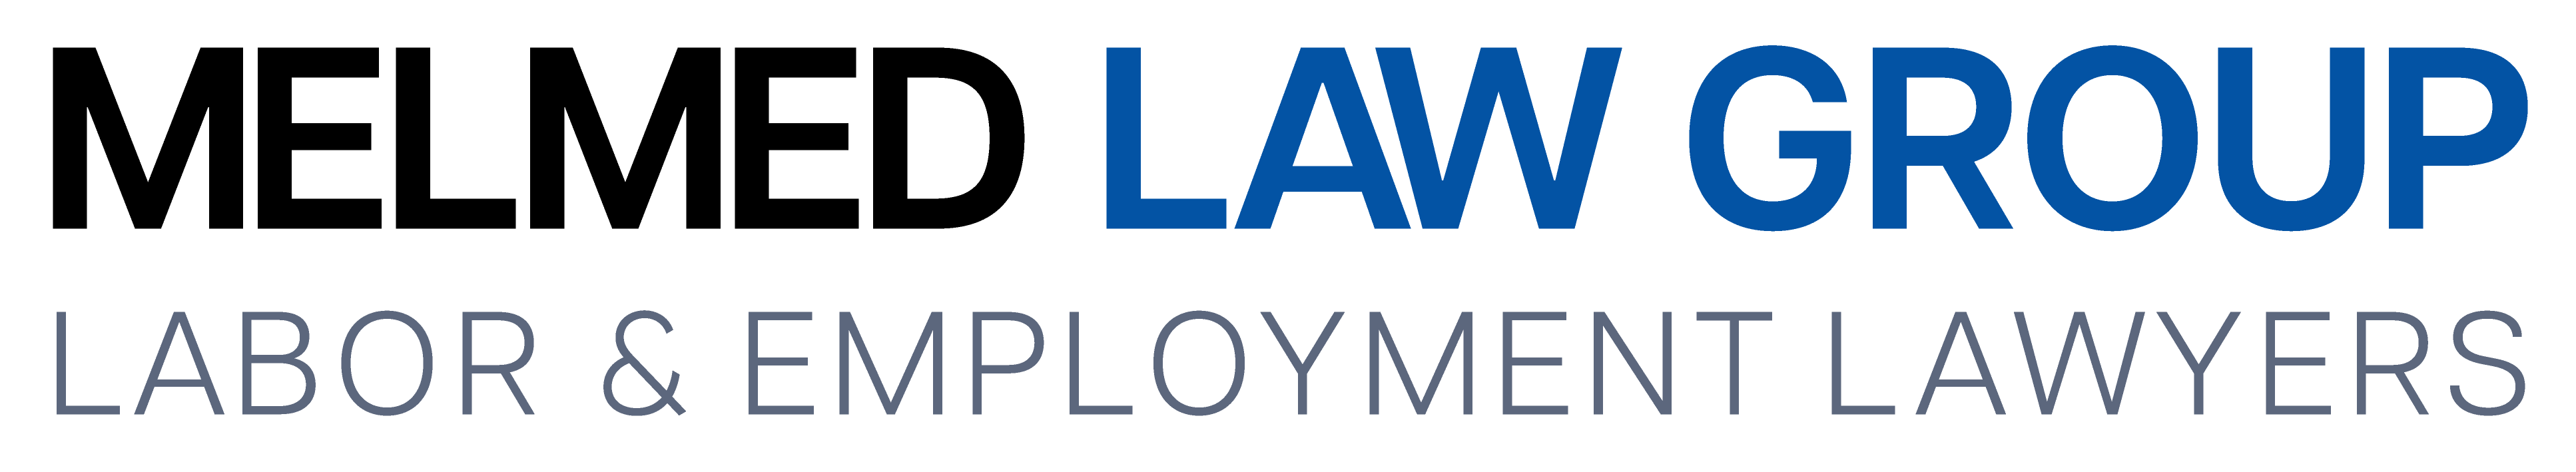 Melmed Law Group logo.png